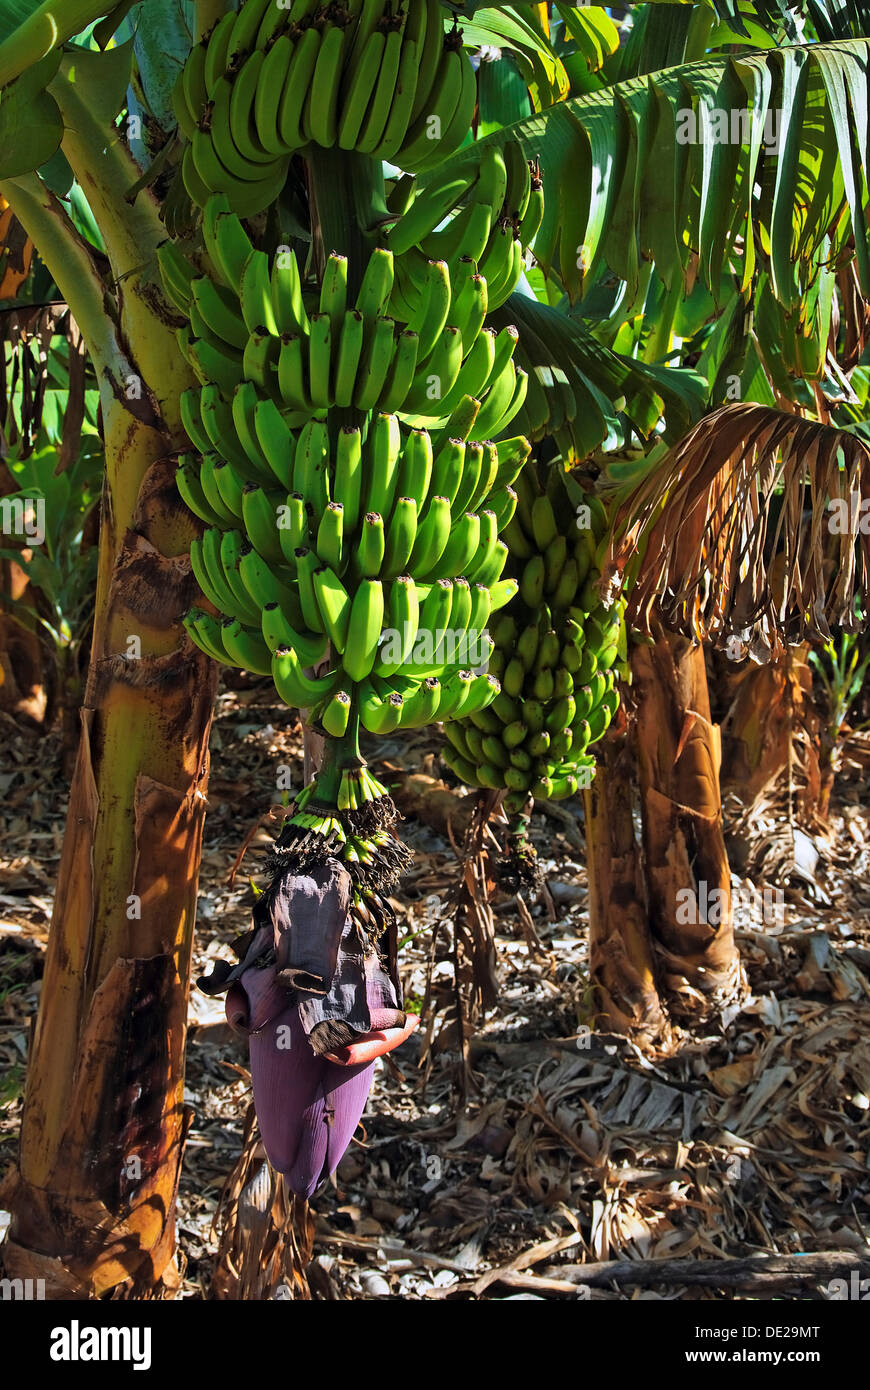 Banano (Musa troglodytarum fei), árbol de plátanos en el valle de Valle Gran Rey, La Gomera, Islas Canarias, España, Europa Foto de stock